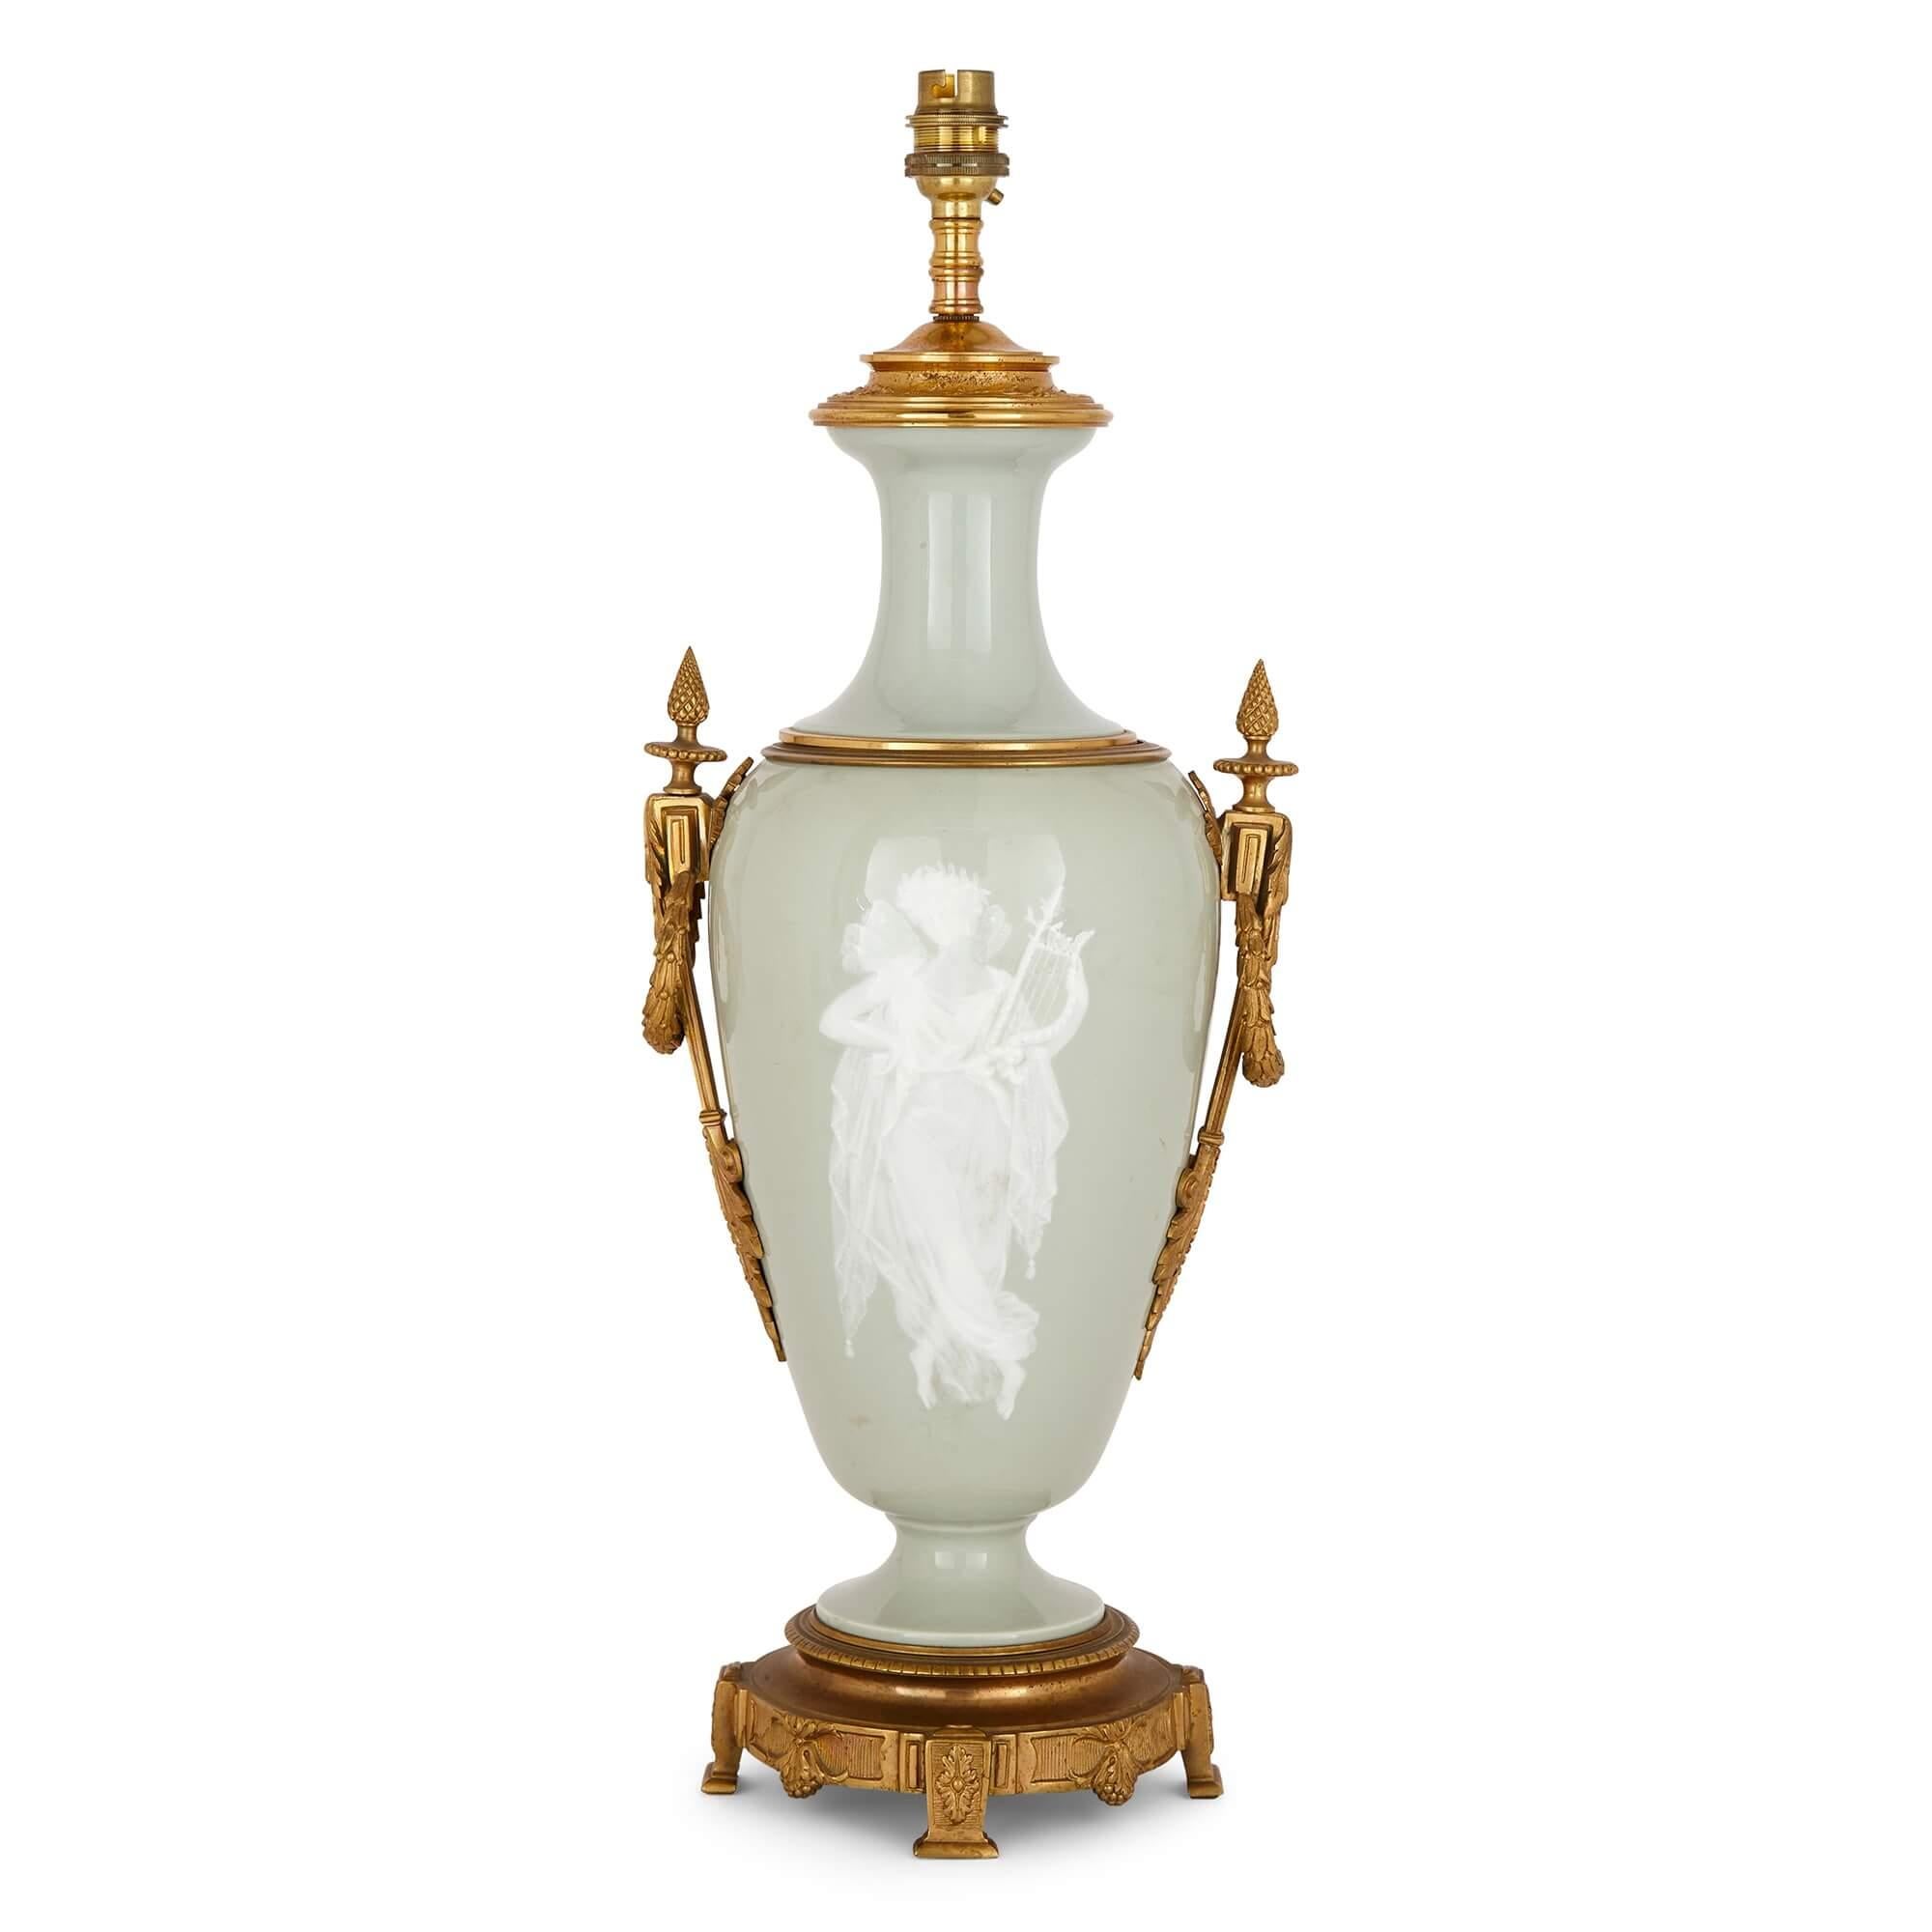 Lampe en forme de vase en porcelaine céladon montée en bronze doré.
Français, fin du XIXe siècle
Mesures : Hauteur 54 cm, largeur 21 cm, profondeur 17 cm.

Composé de montures en bronze doré sur de la porcelaine céladon pâte-sur-pâte, ce